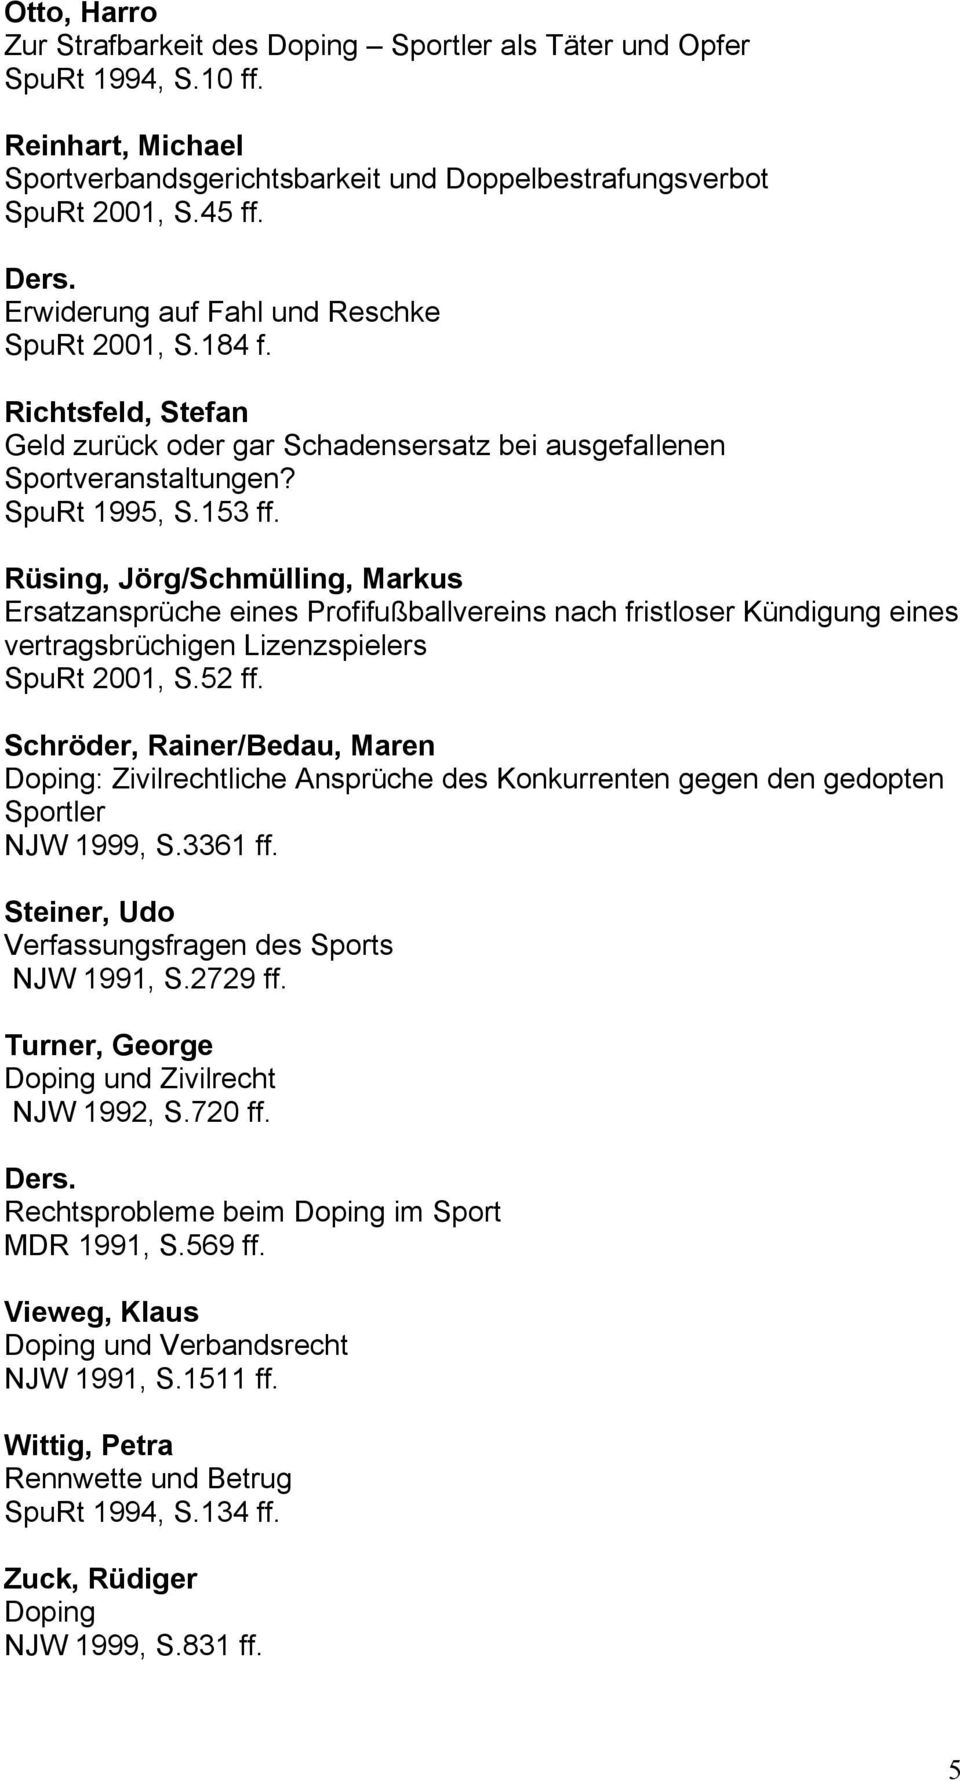 Rüsing, Jörg/Schmülling, Markus Ersatzansprüche eines Profifußballvereins nach fristloser Kündigung eines vertragsbrüchigen Lizenzspielers SpuRt 2001, S.52 ff.